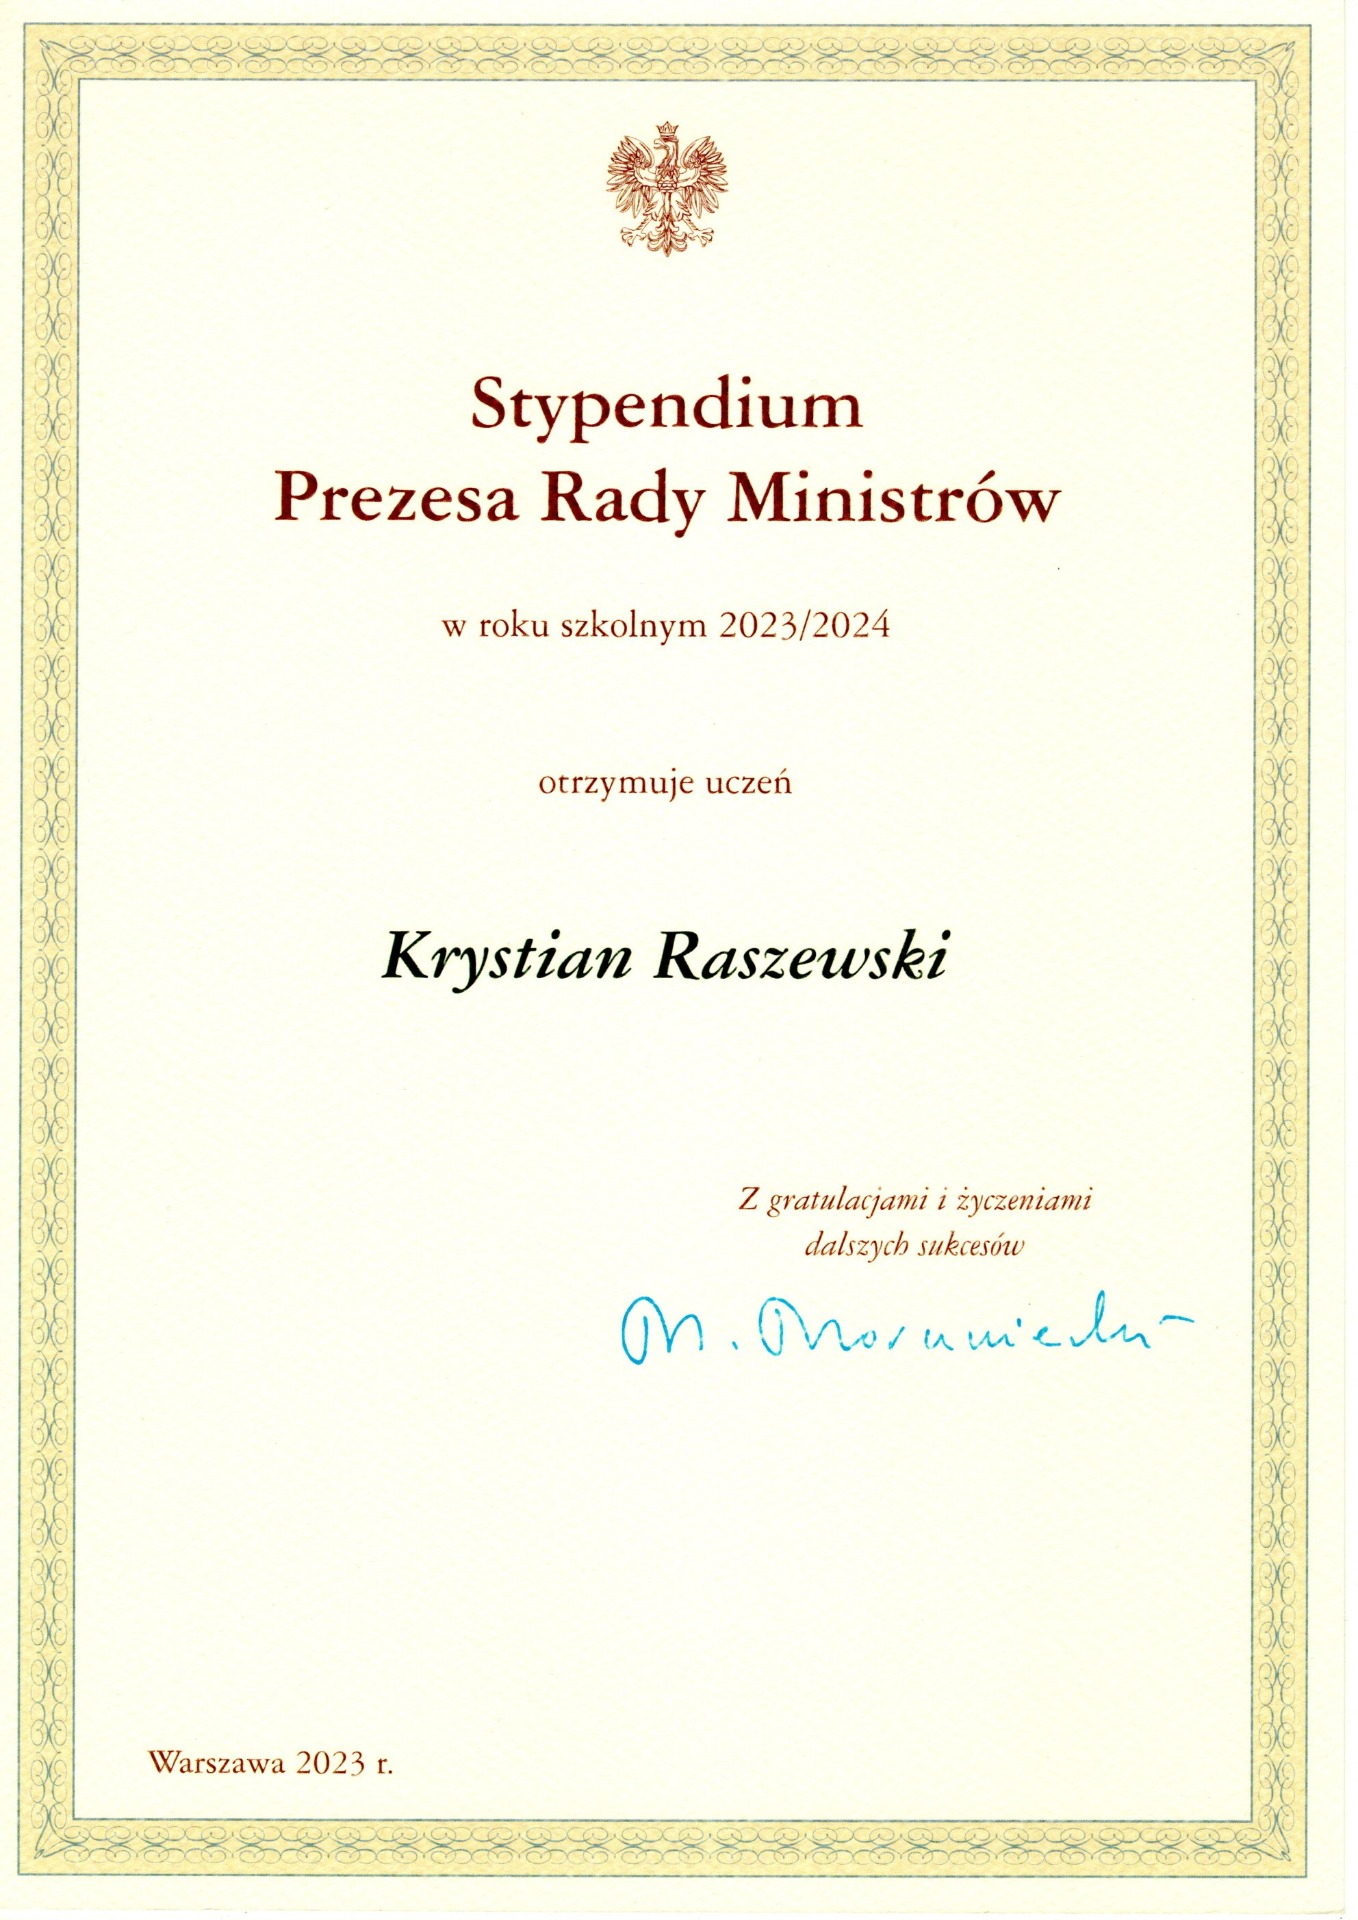 Dyplom - stypendium Prezesa Rady Ministrów dla Krystiana Raszewskiego